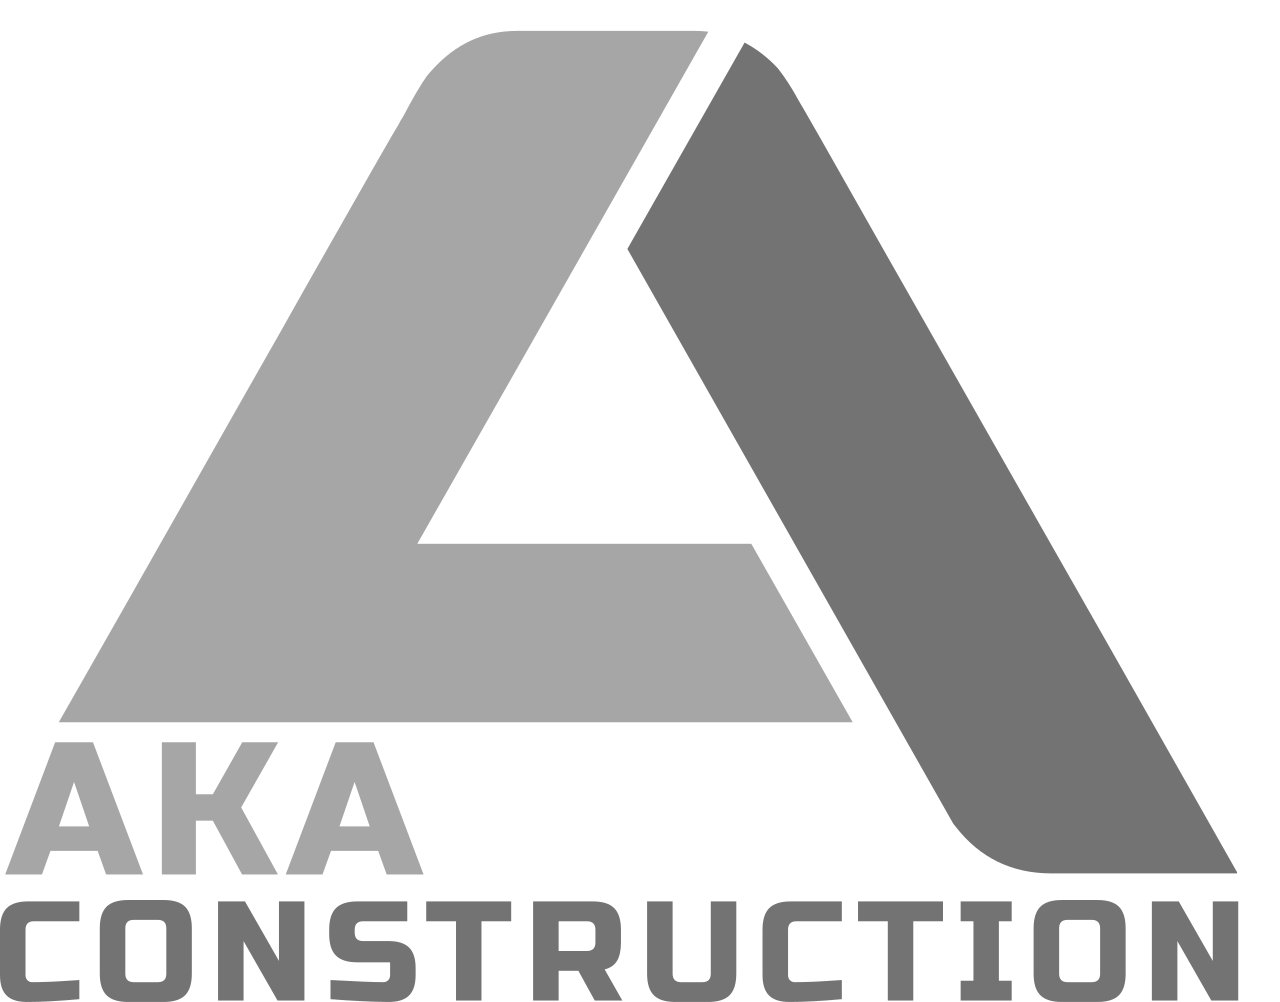 AKA's logo